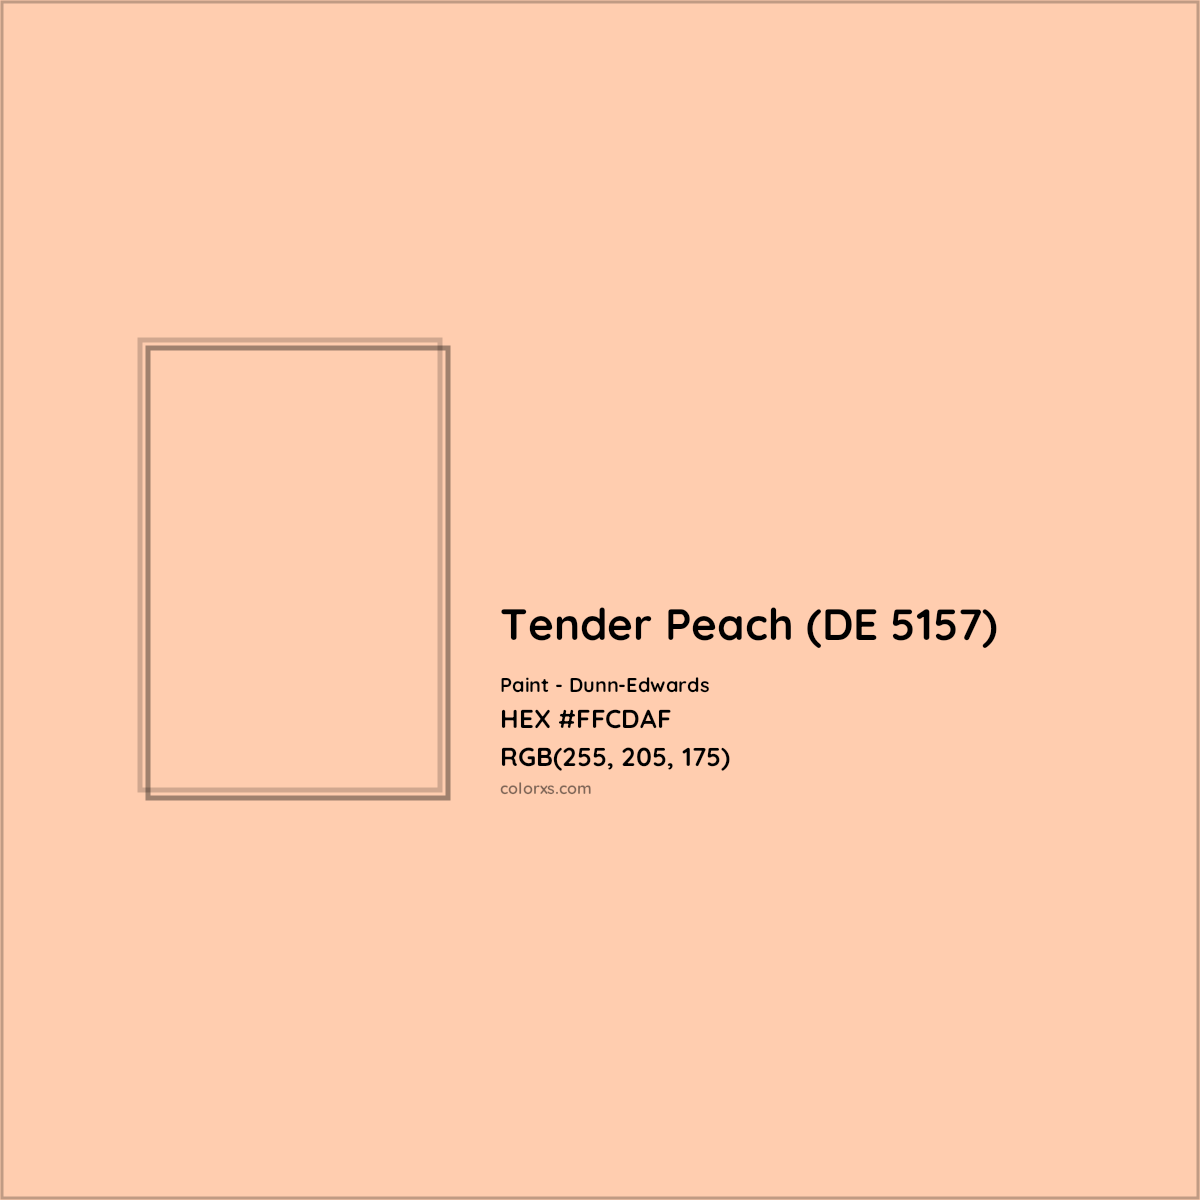 HEX #FFCDAF Tender Peach (DE 5157) Paint Dunn-Edwards - Color Code